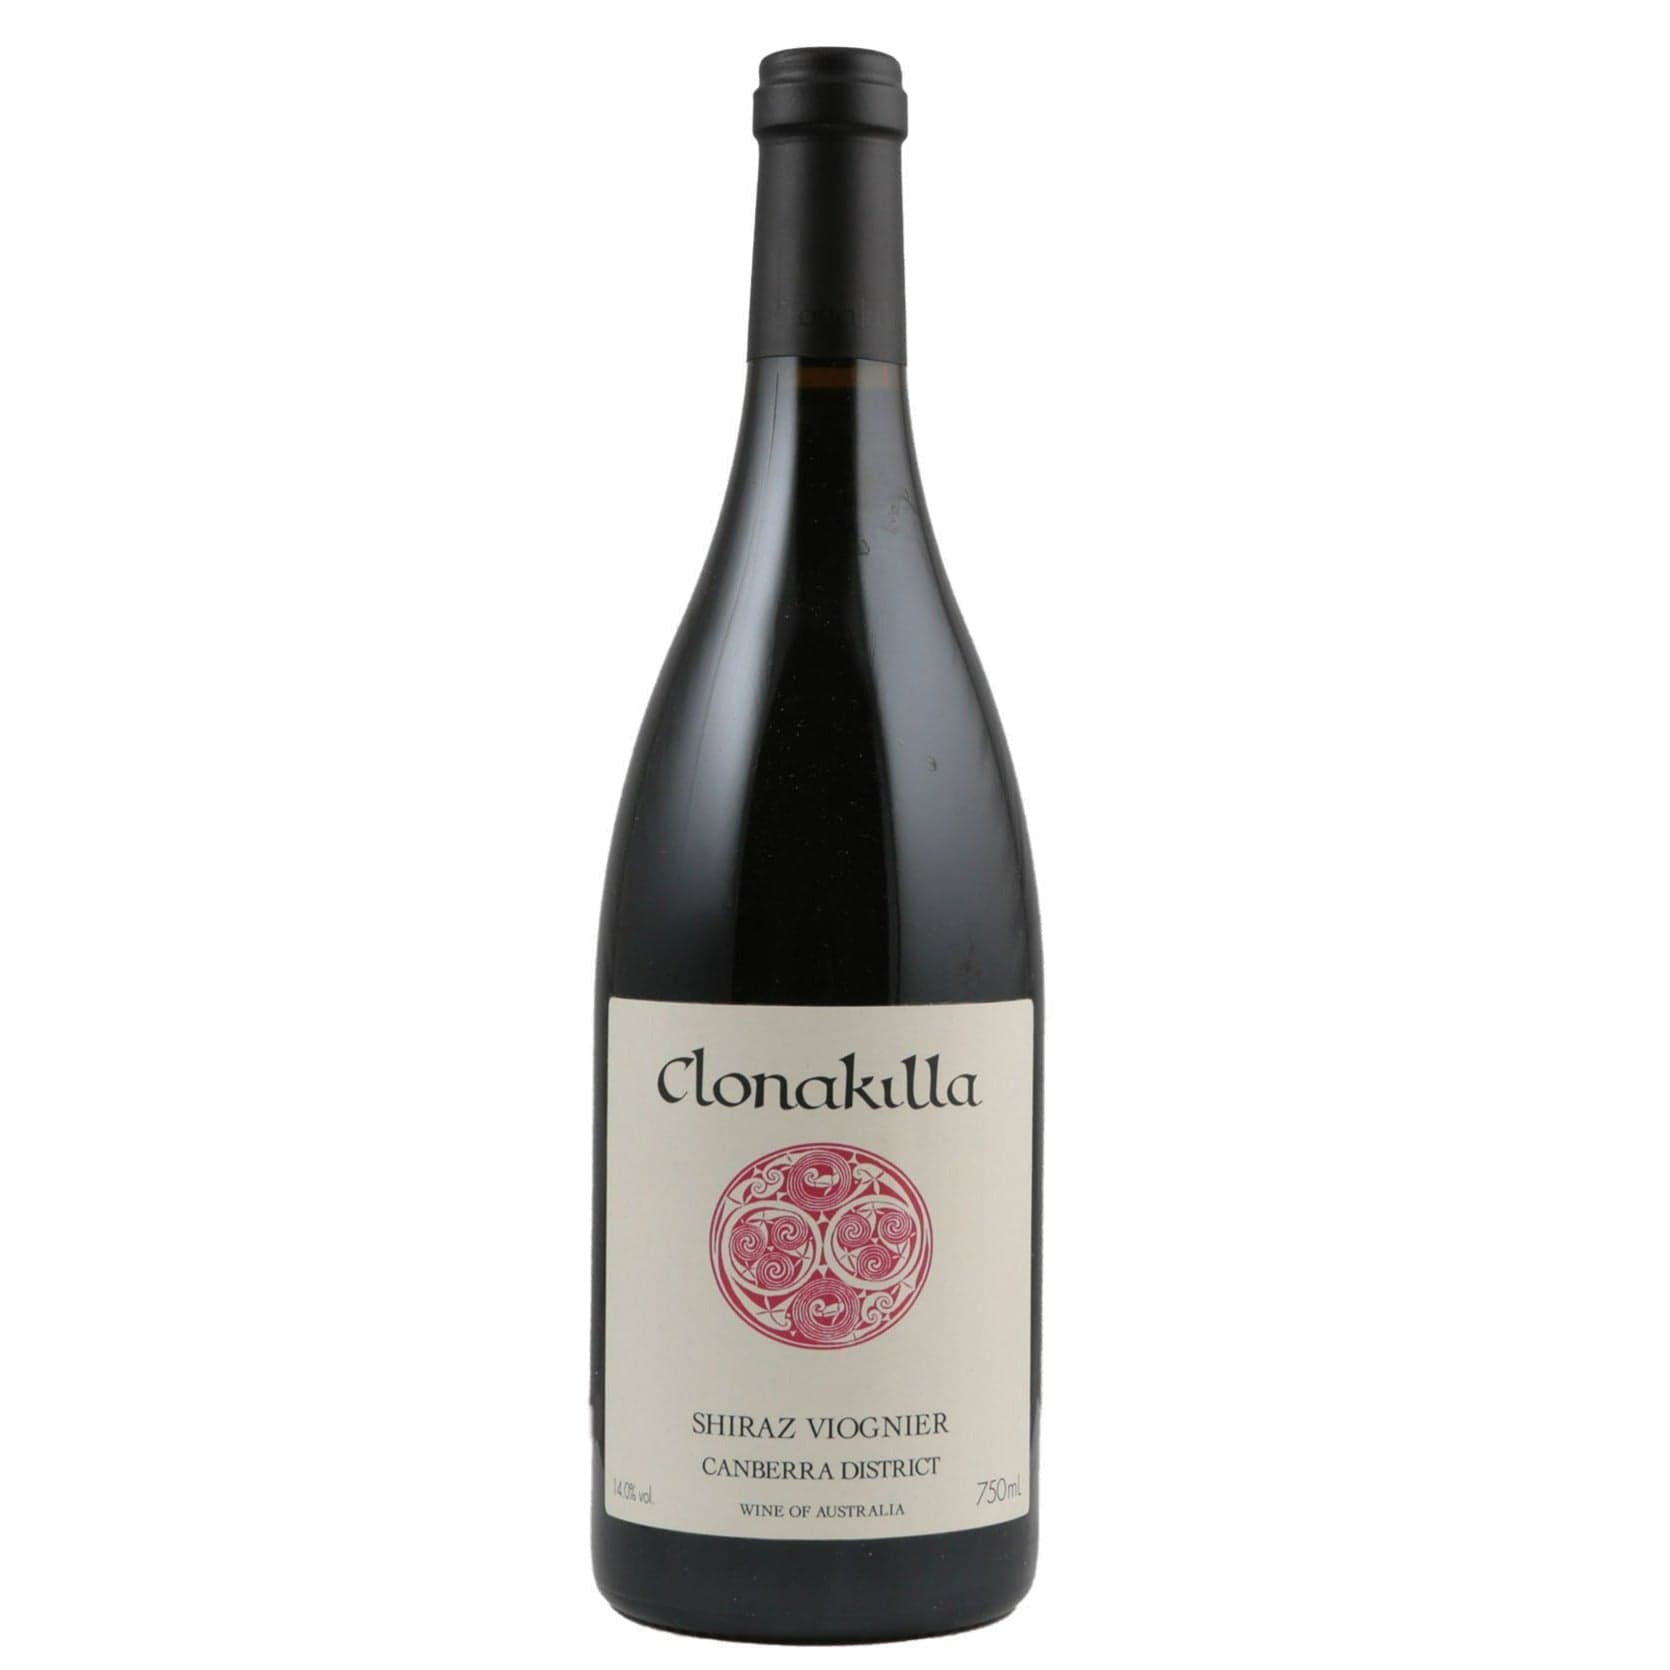 Single bottle of Red wine Clonakilla, Shiraz-Viognier Canberra District, 2015 95% Shiraz, 5% Viognier